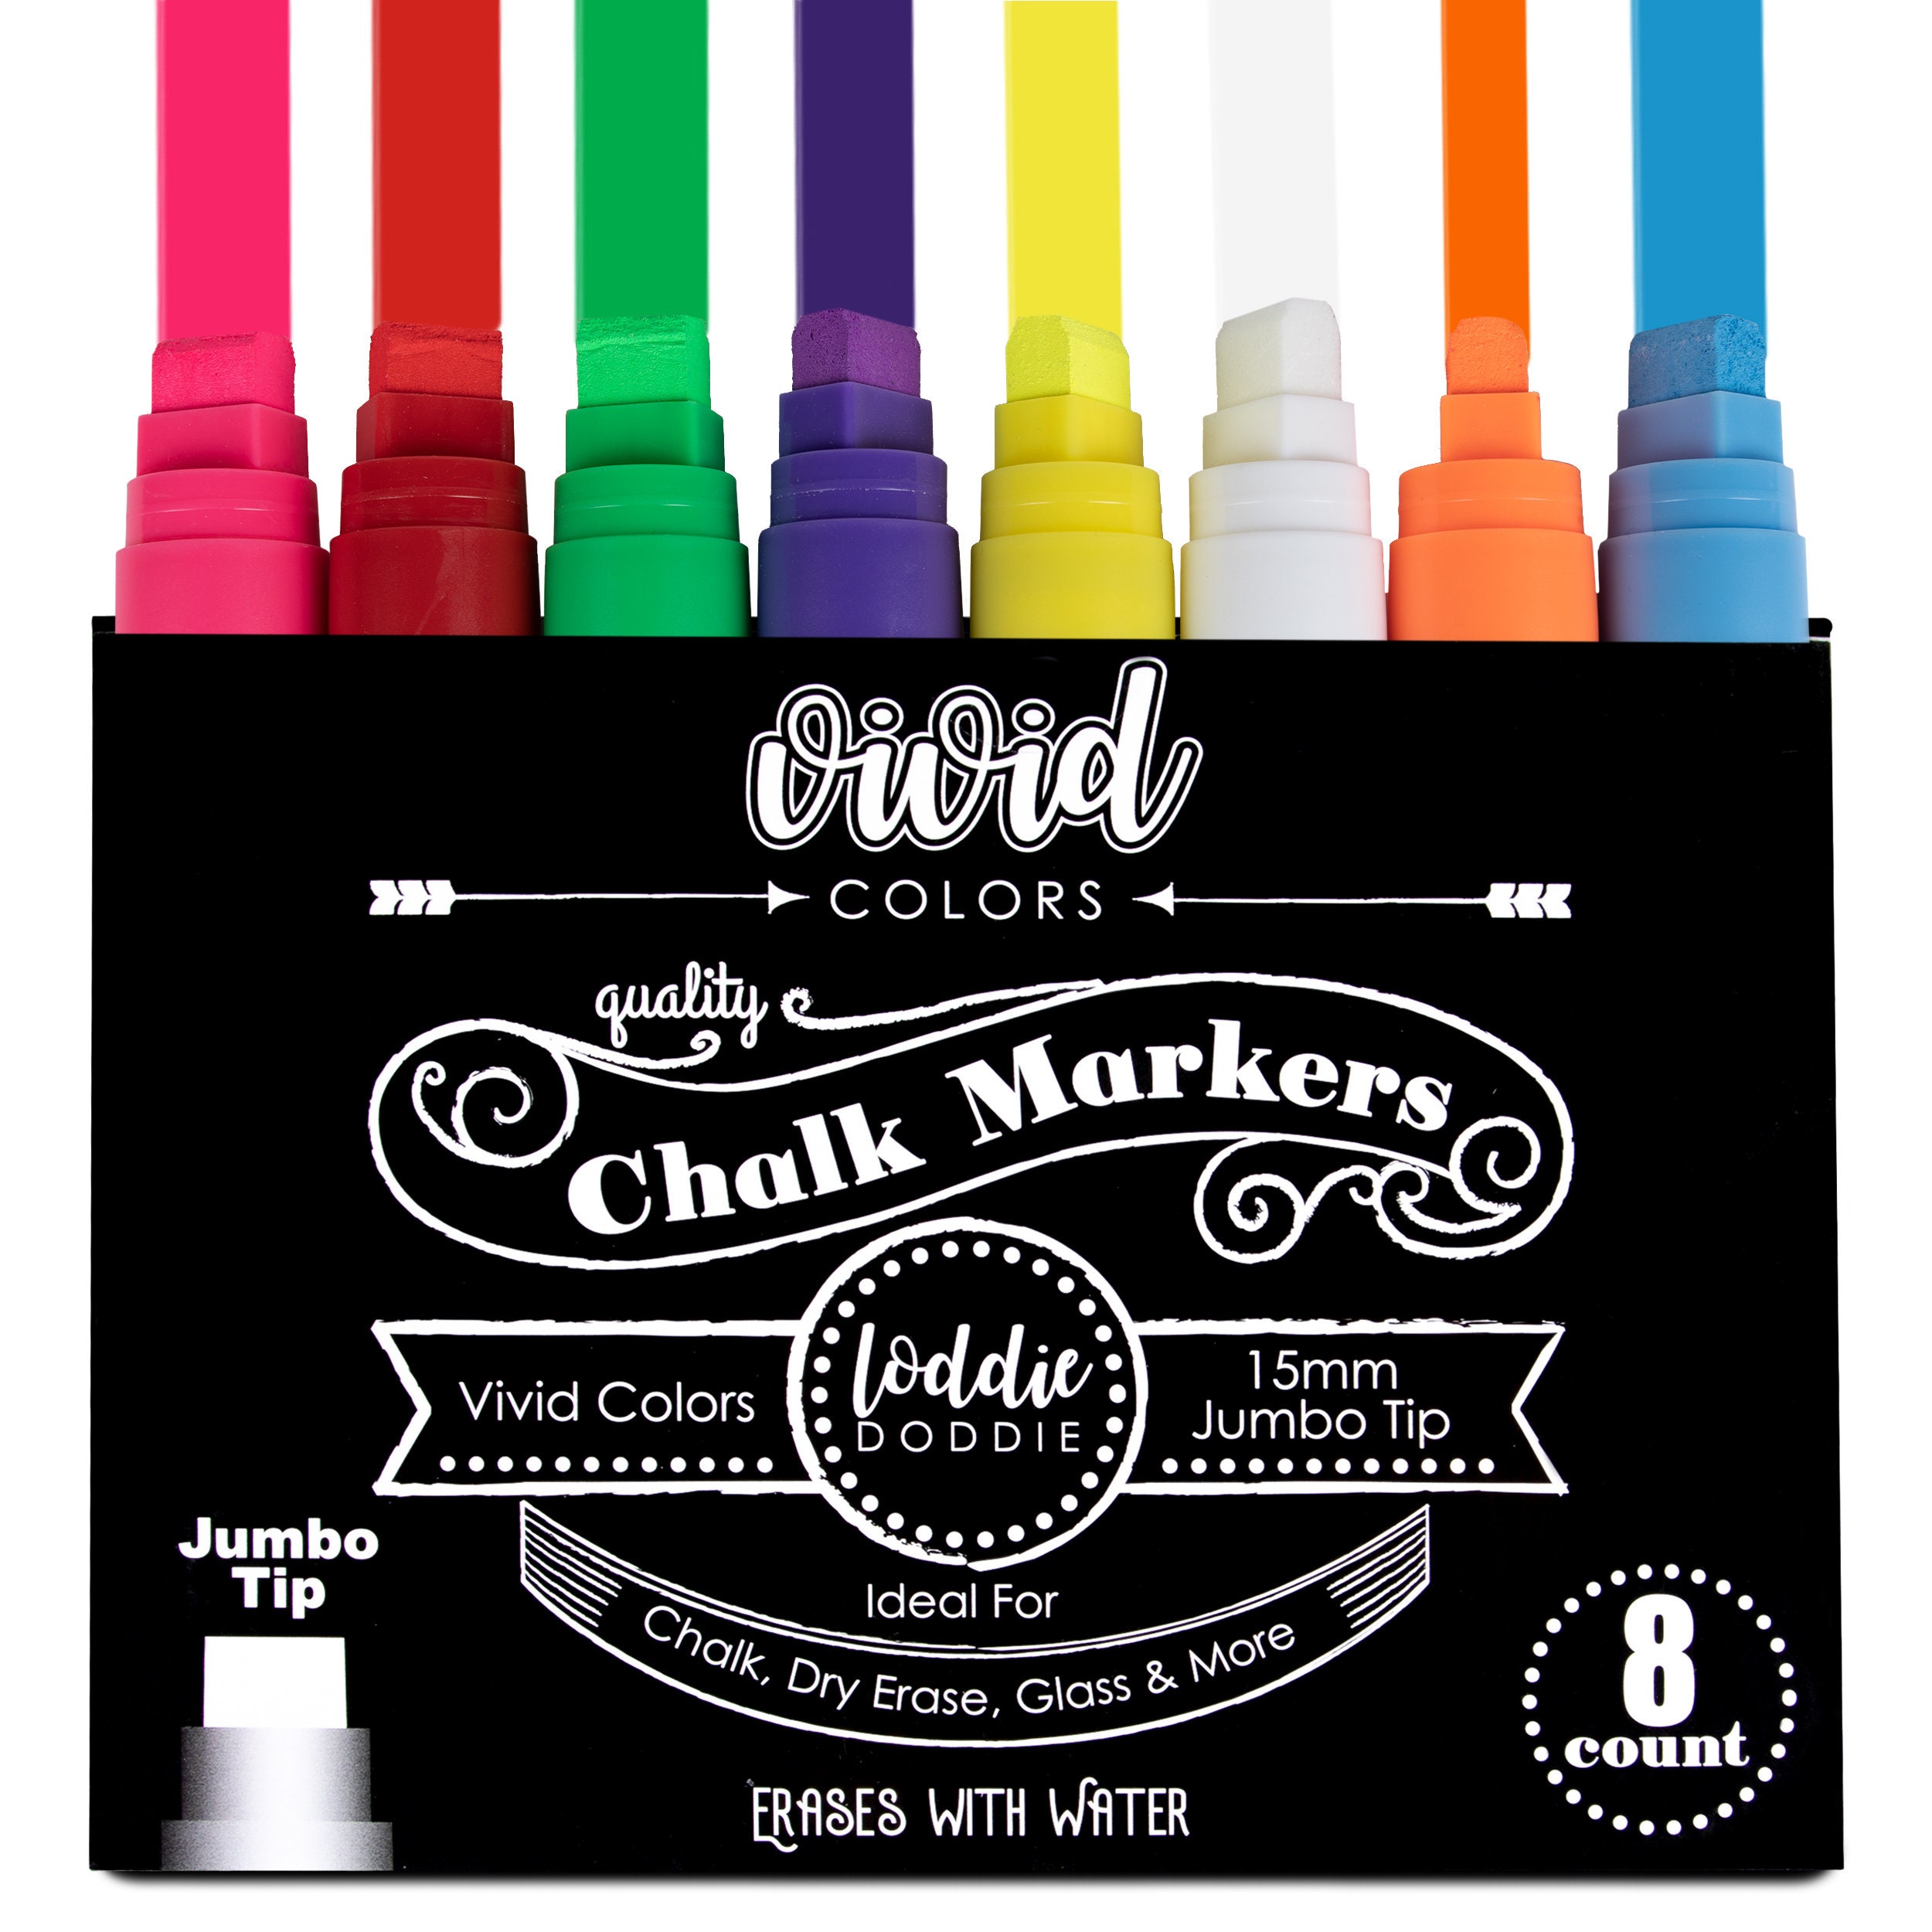 Loddie Doddie Liquid Chalk Markers - Pack of 4 Chalk Pens